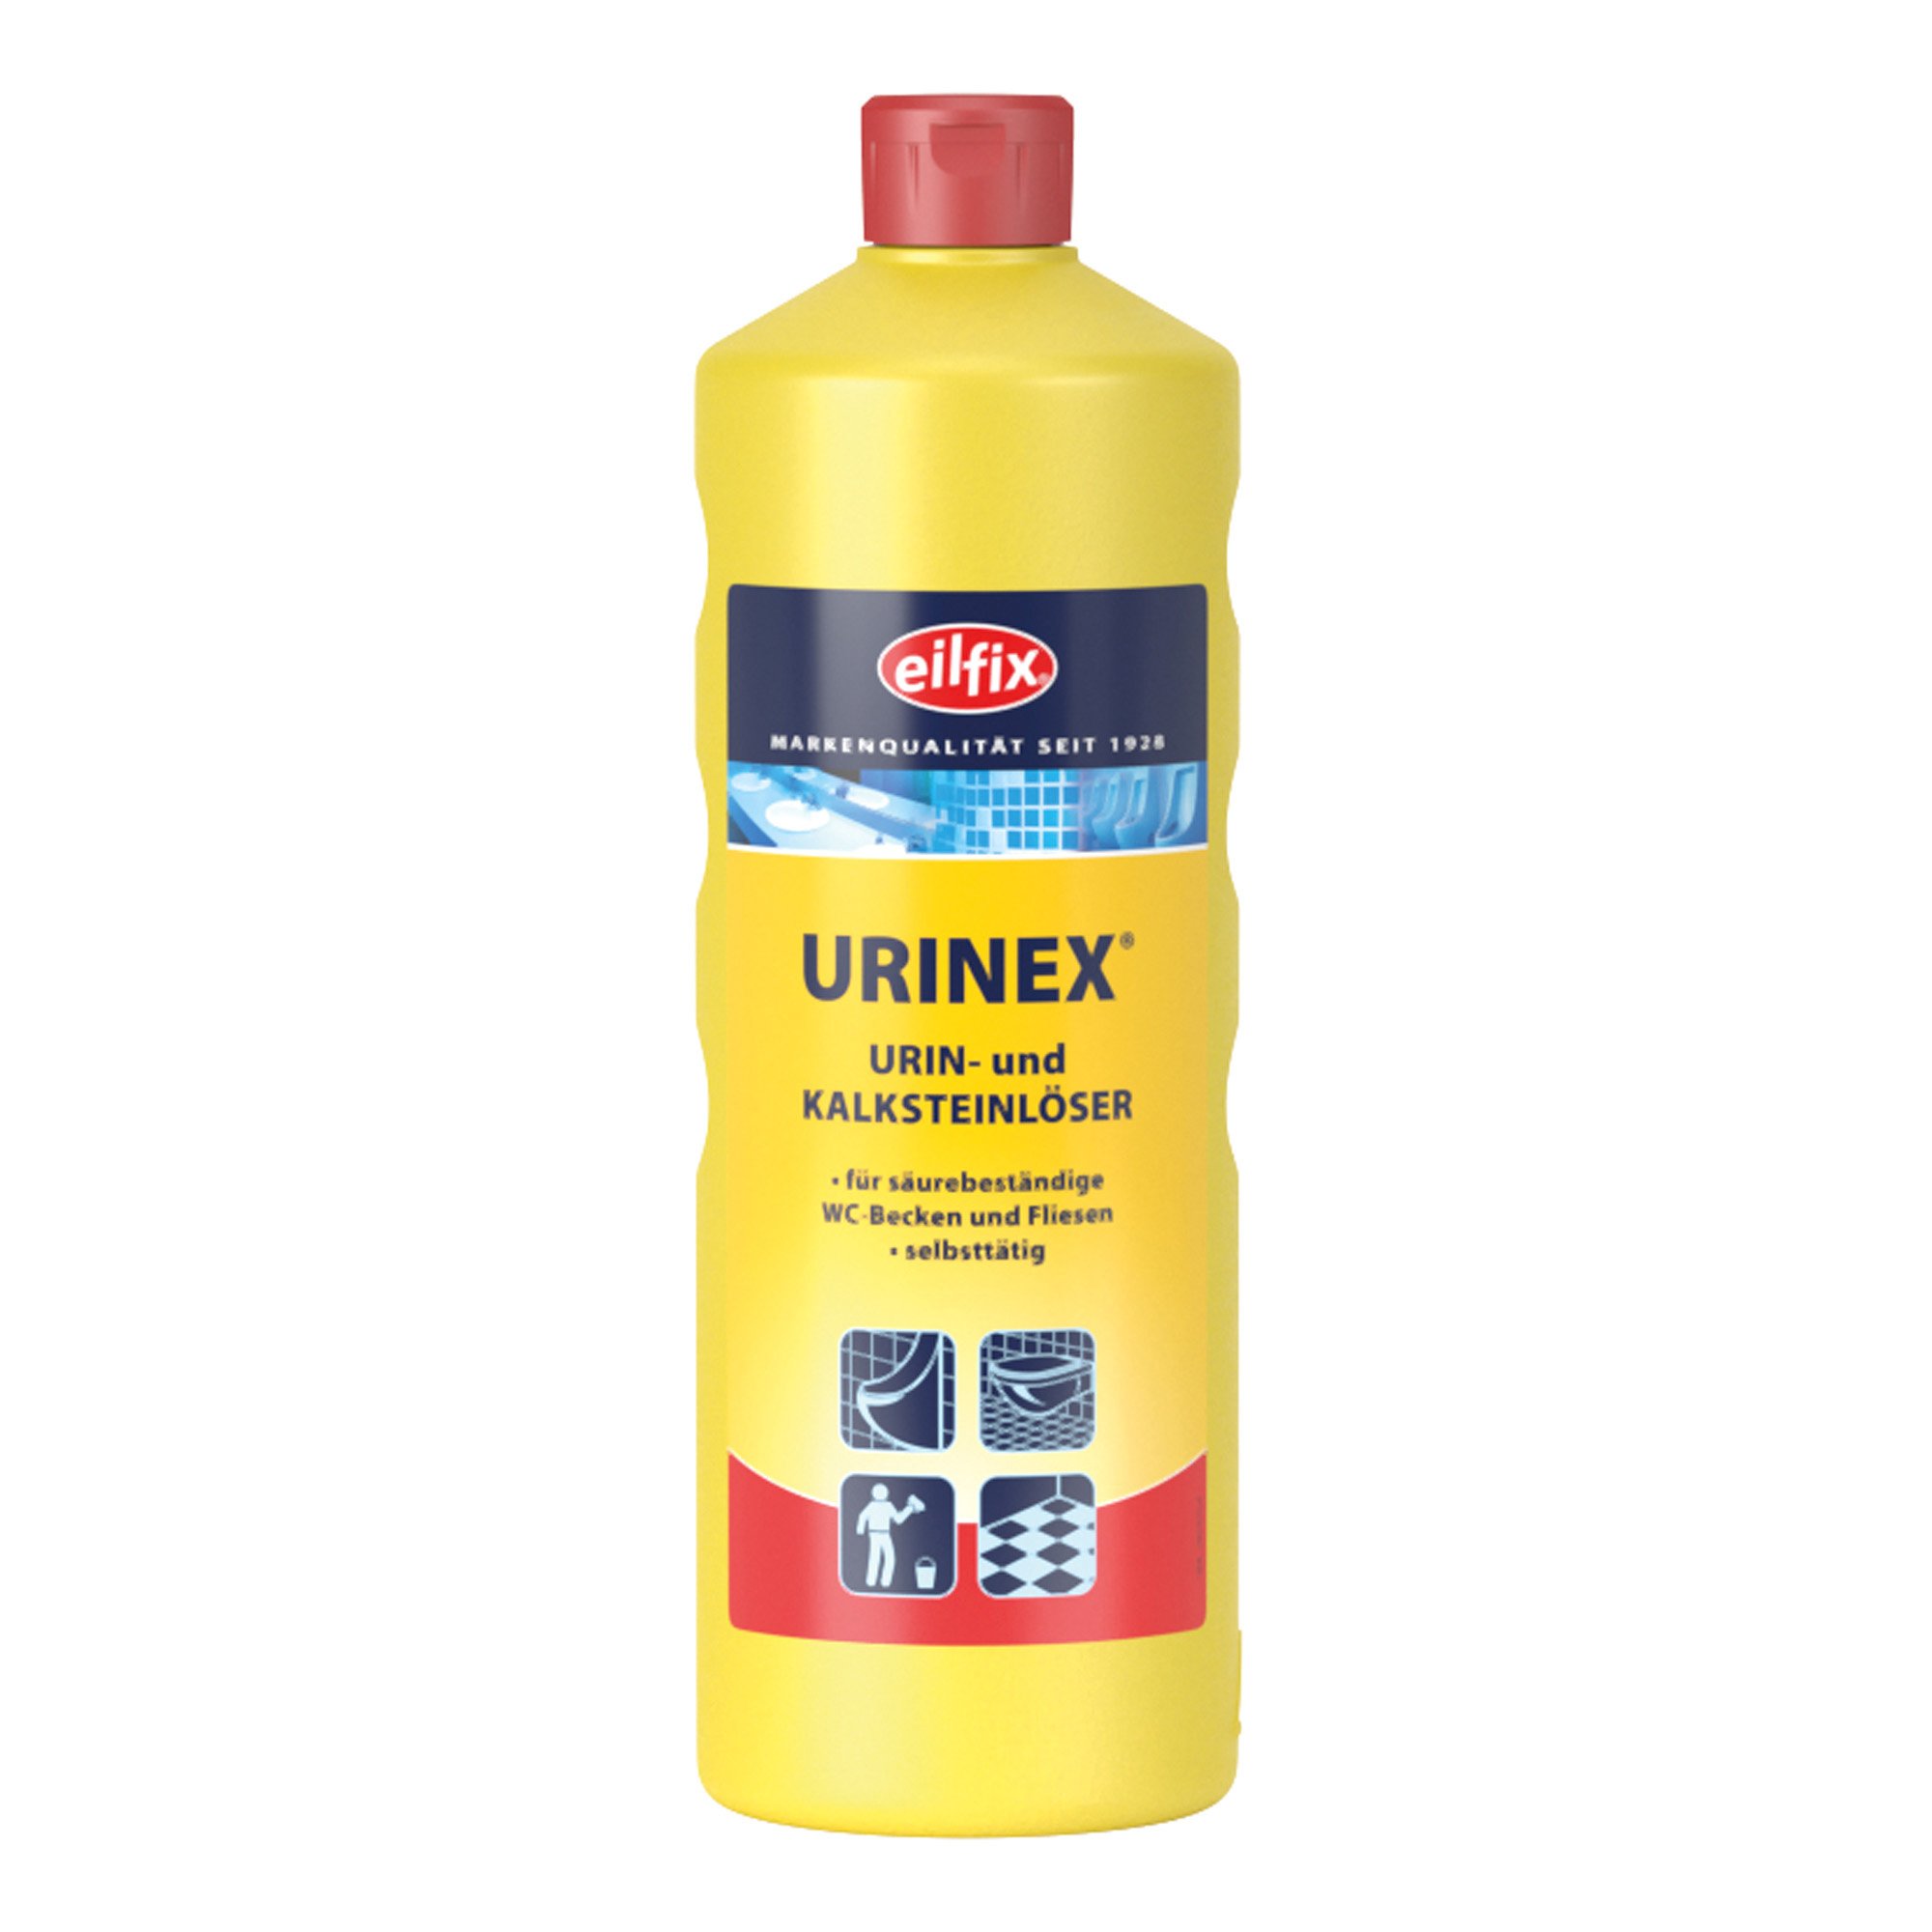 Eilfix Urinex Urin- Kalksteinlöser 1 Liter Flasche 100307-001-000_1